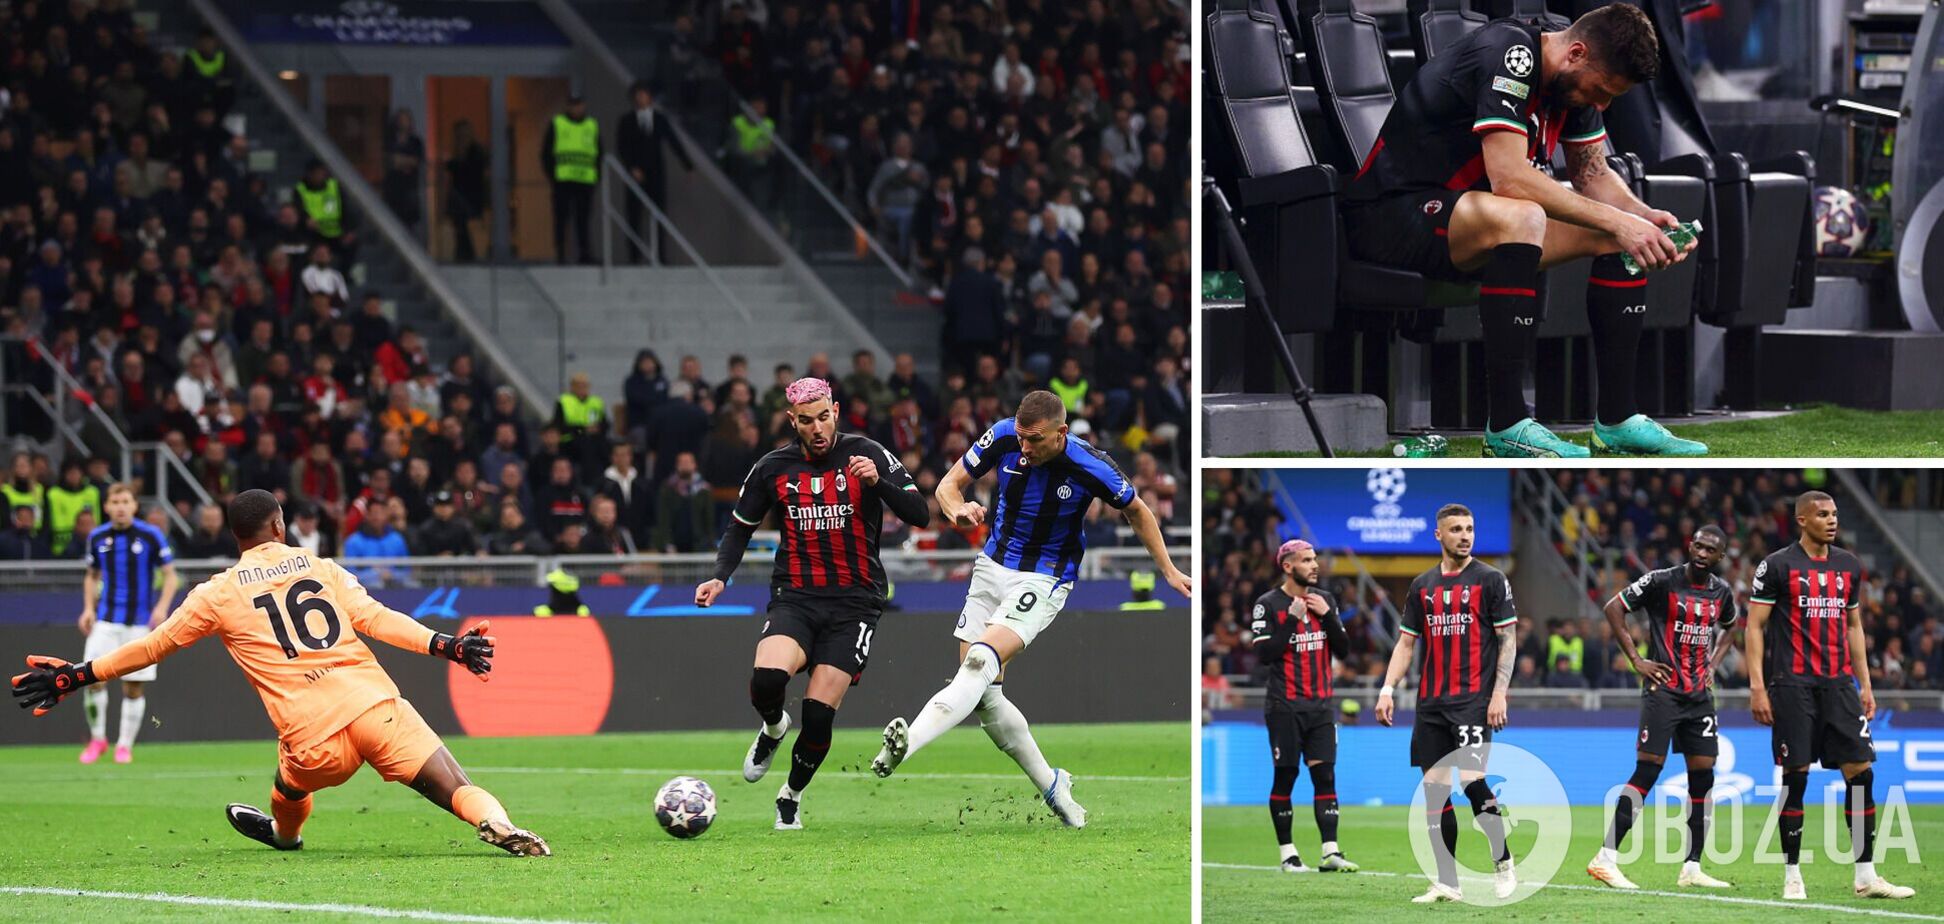 'Интер' за 3 минуты шокировал 'Милан' в полуфинале Лиги чемпионов. Видео